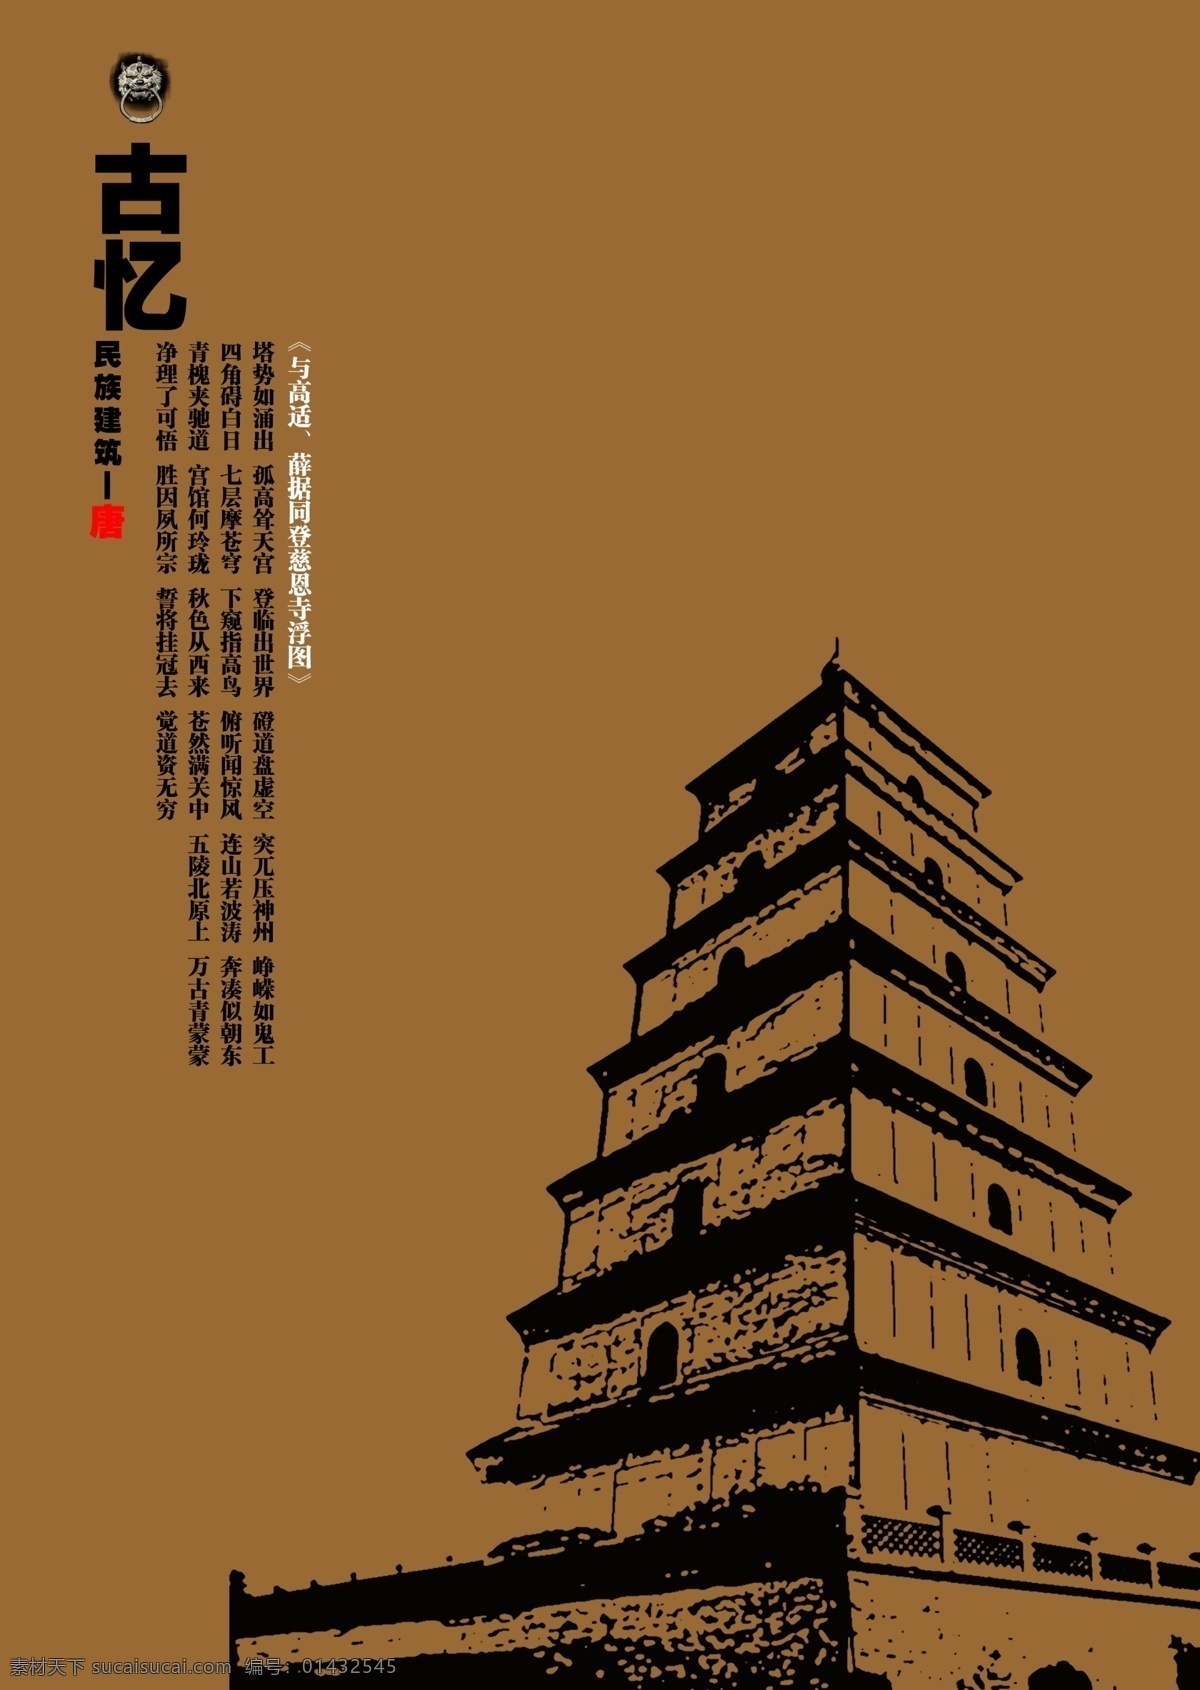 民族建筑 招贴 系列 唐代 传统文化 招贴设计 中国风 系列招贴 原创设计 原创海报